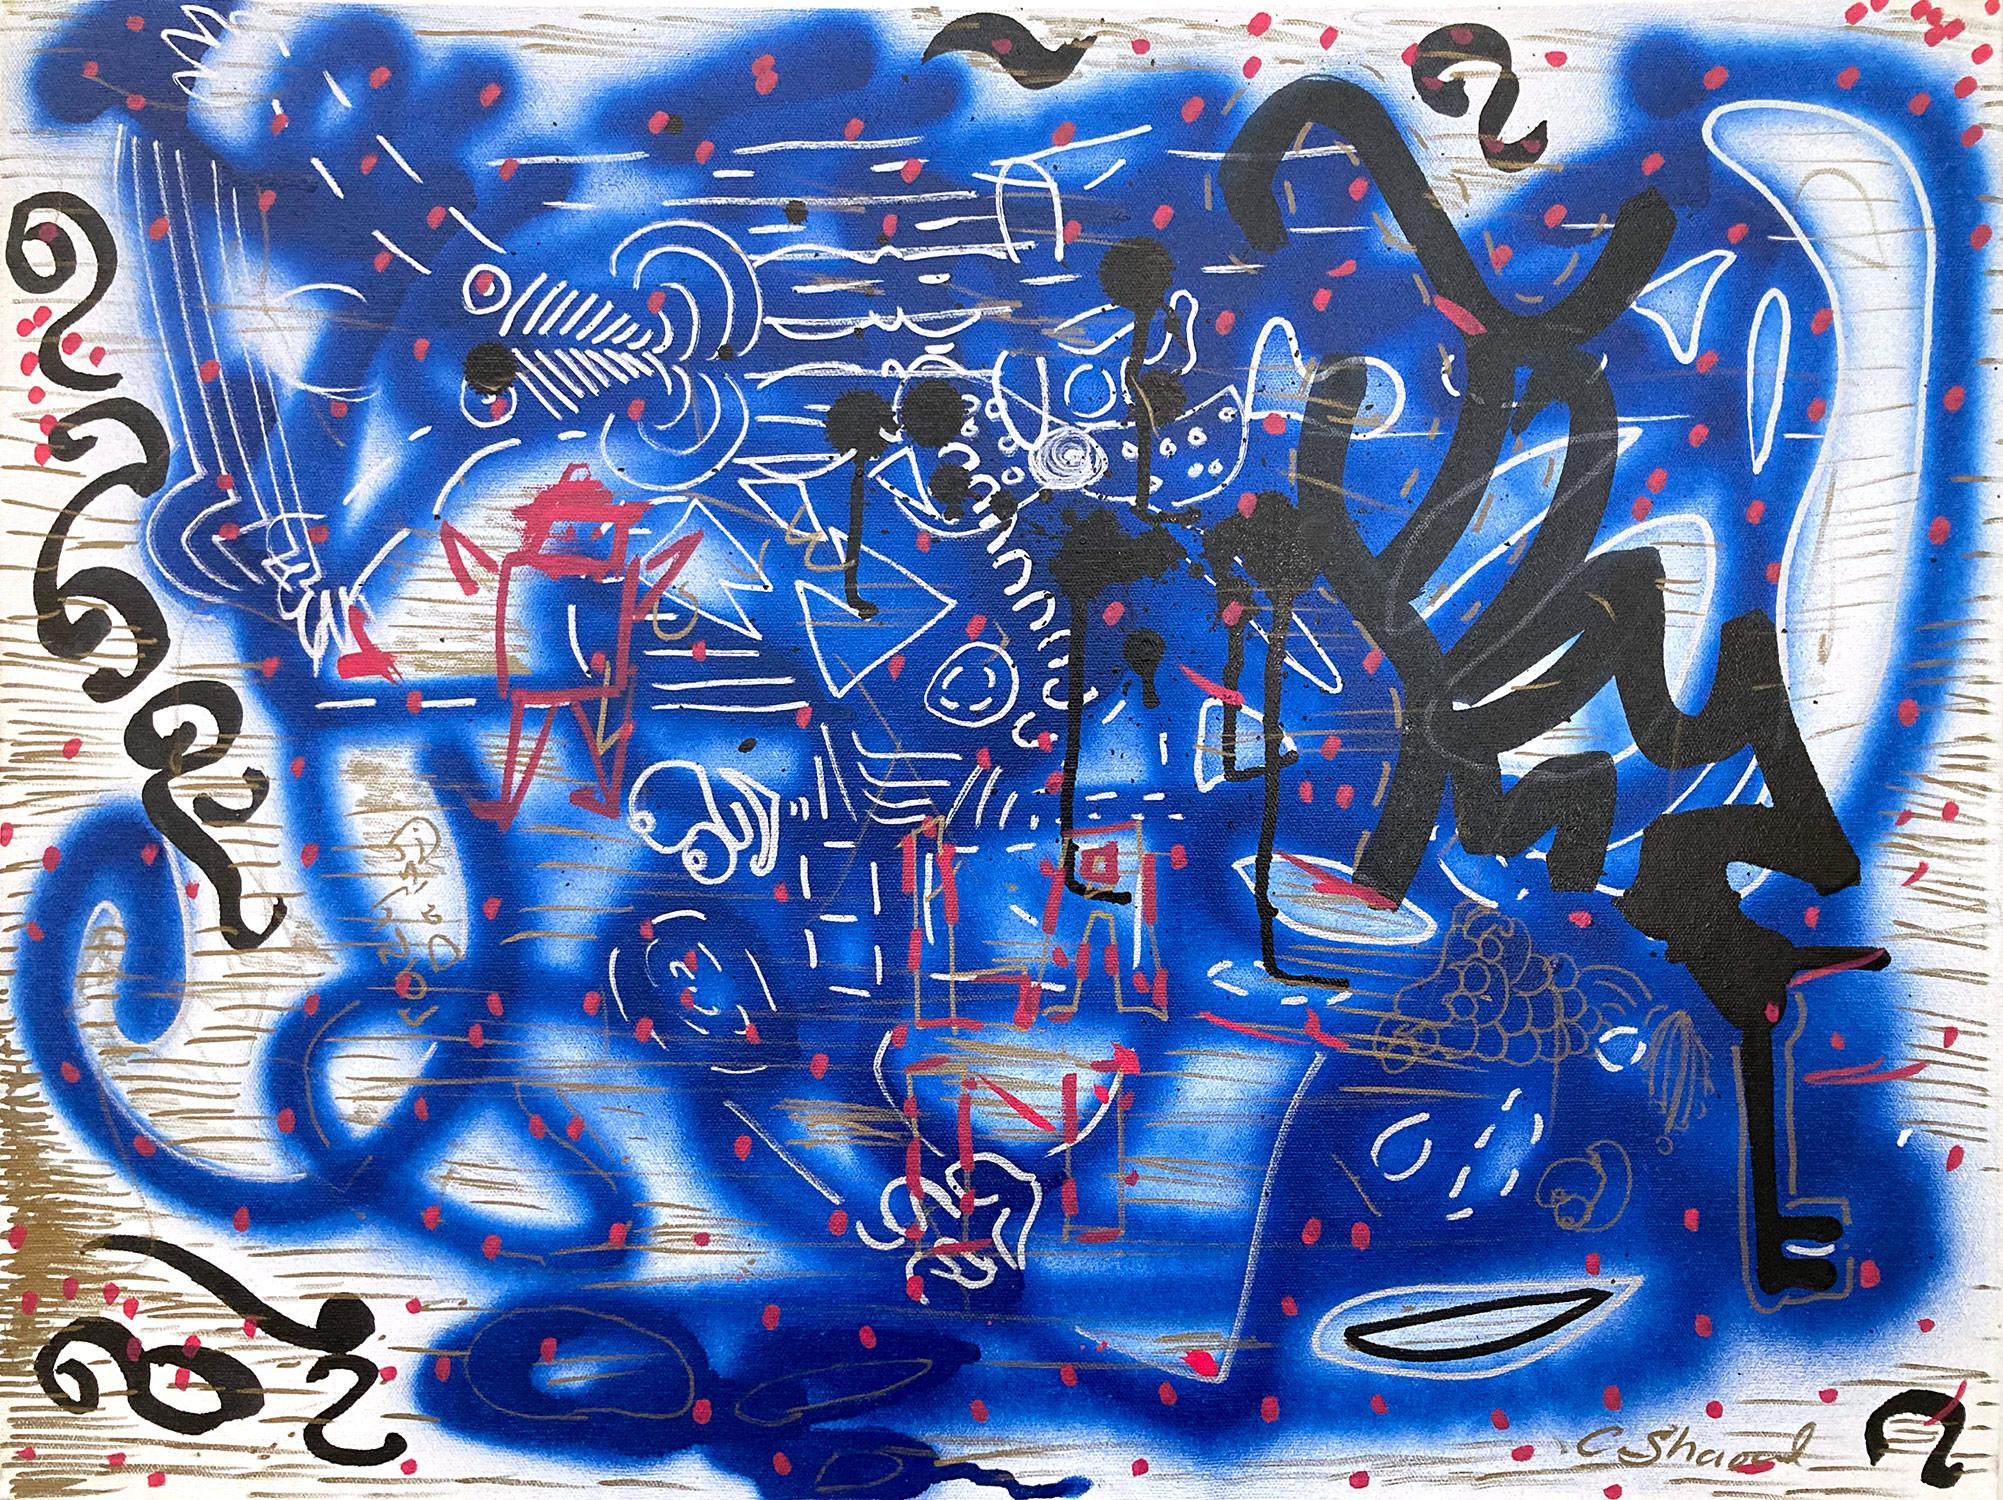 Abstract Painting LA II (Angel Ortiz) - « Music Box » décorée de graffitis sur toile, peinture acrylique et encre sur toile